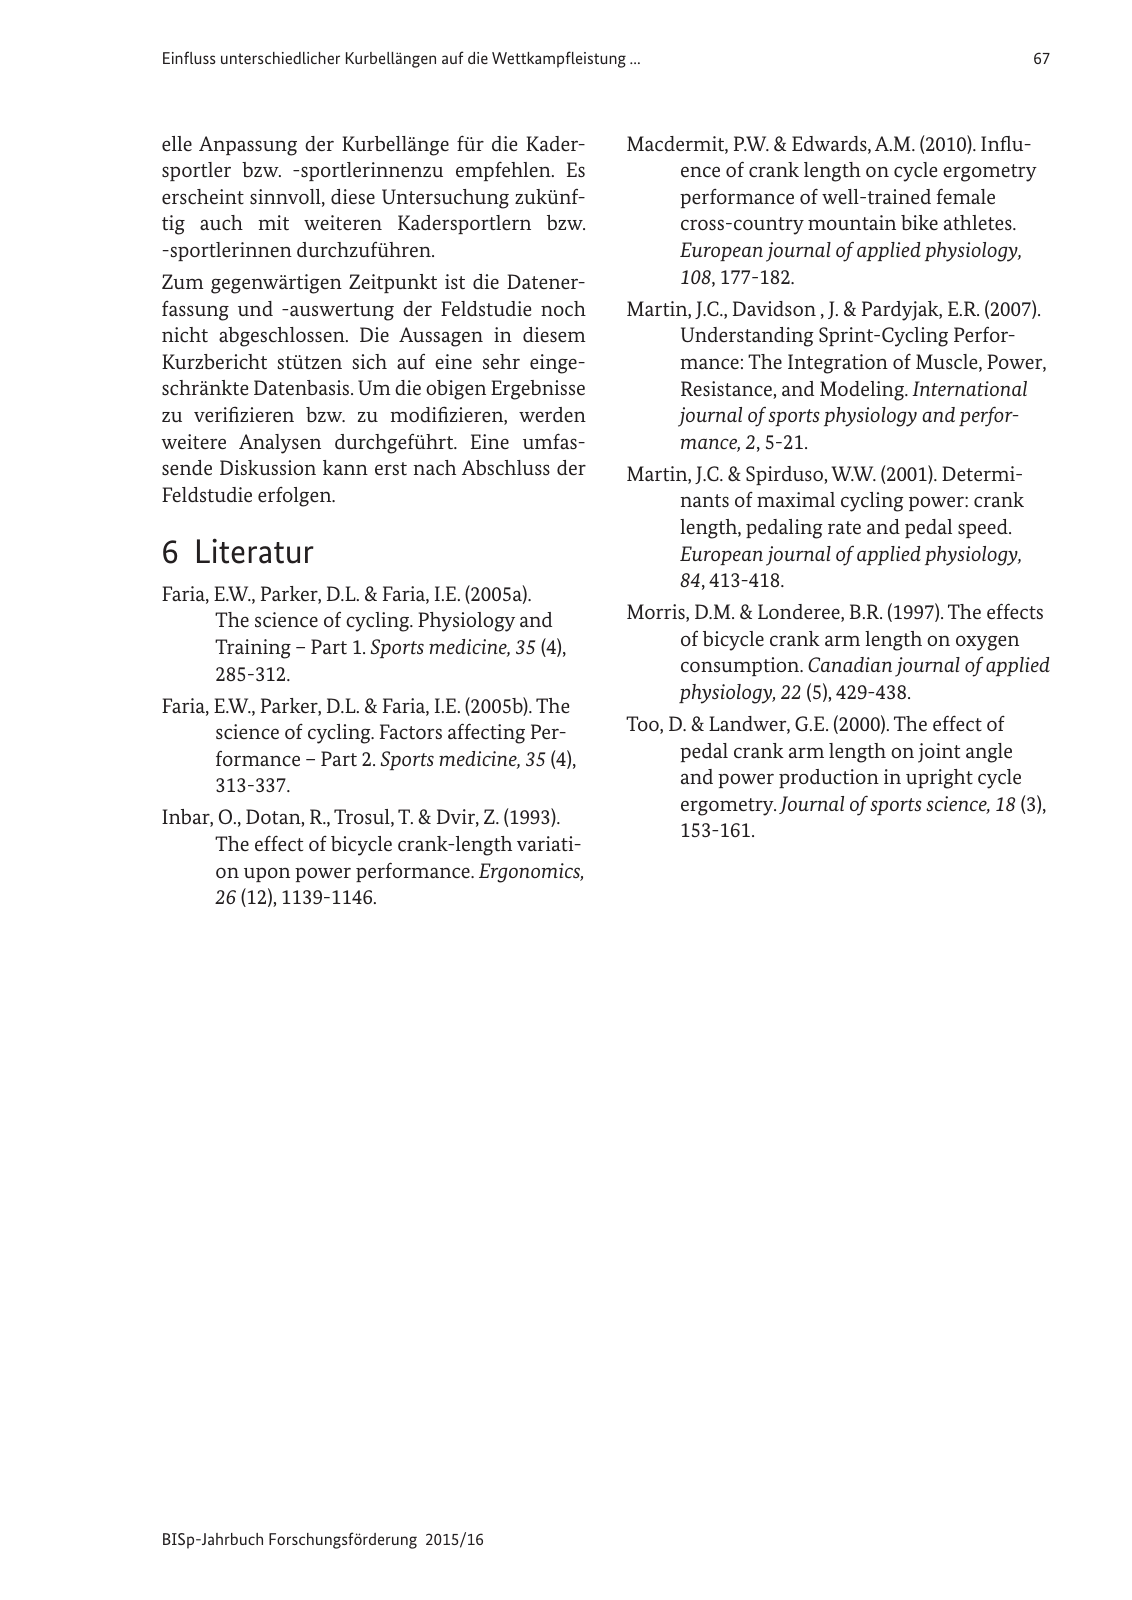 Vorschau BISp-Jahrbuch Forschungsförderung 2015/16 Seite 69